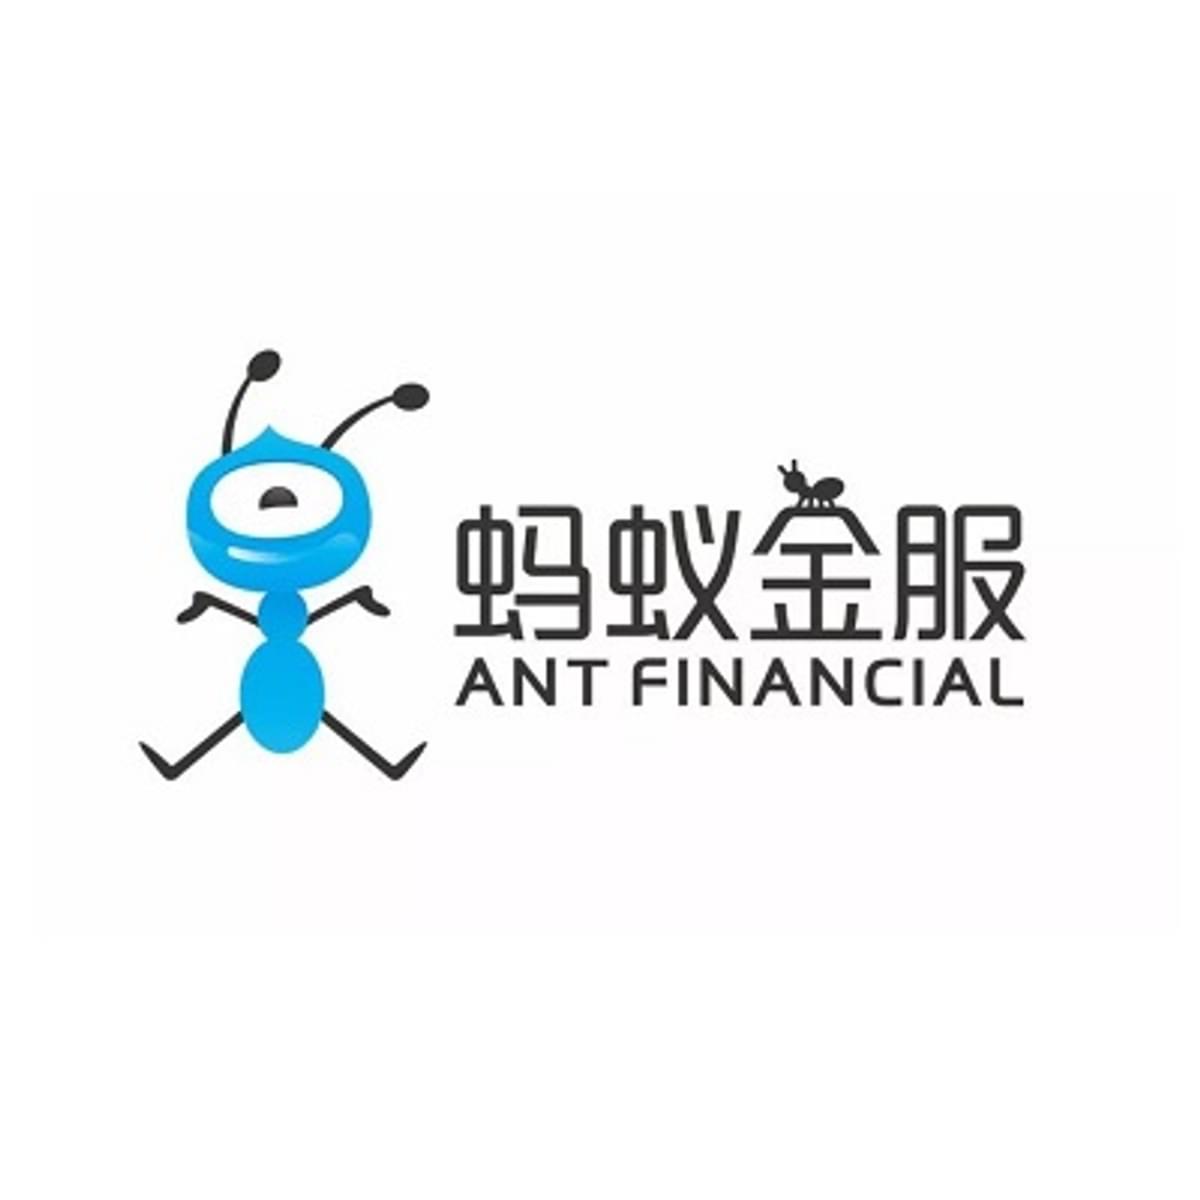 Verstrengt toezicht en verplichte reorganisatie voor Ant Group van Jack Ma image